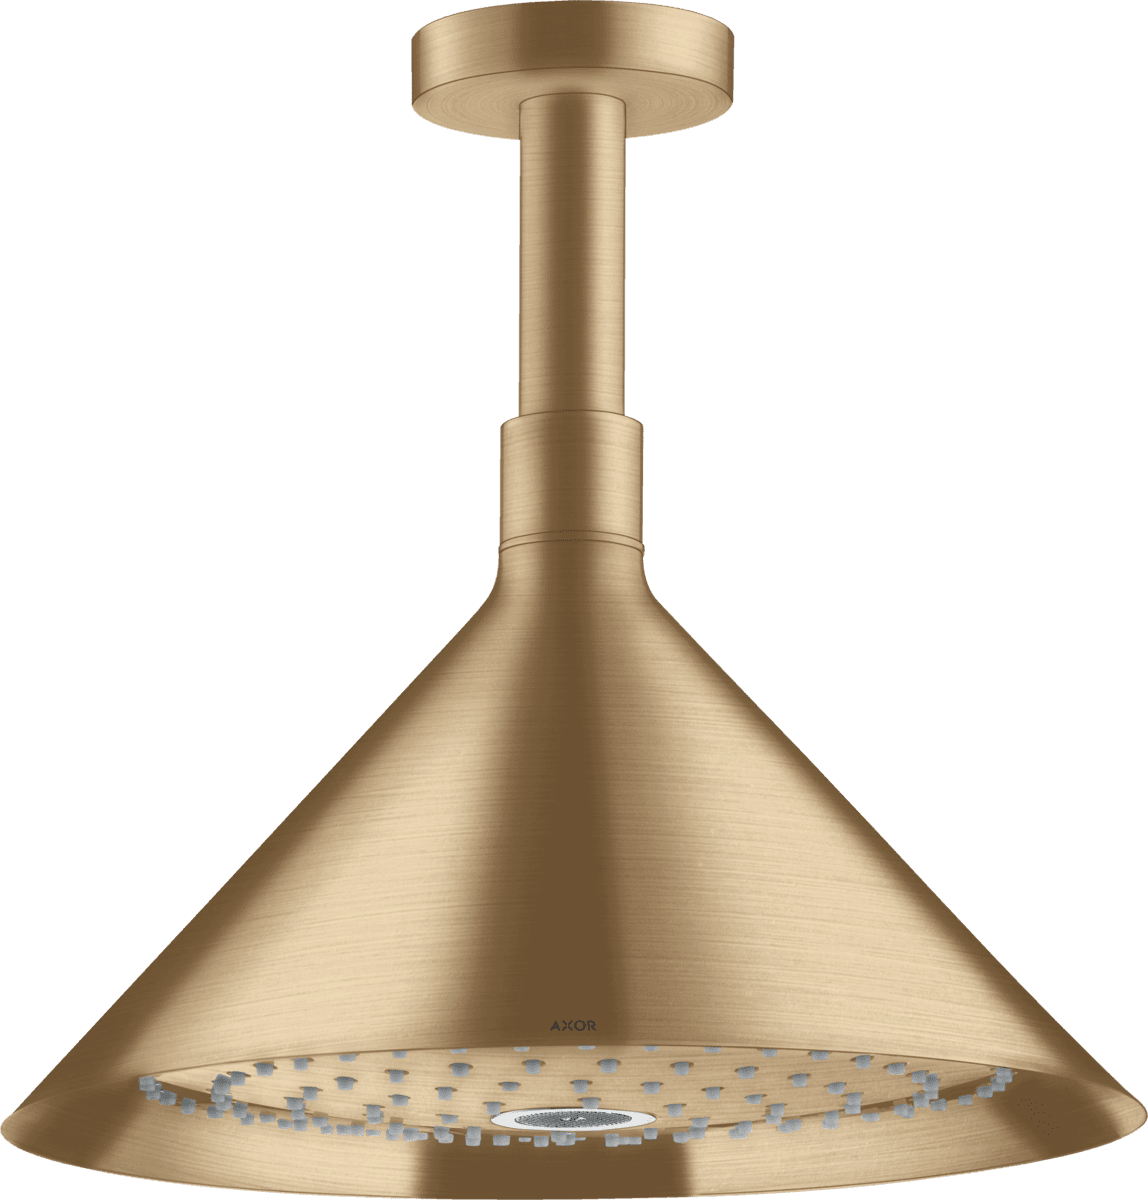 HANSGROHE AXOR Showers/Front Tepe duşu 240 2jet, tavan bağlantısı ile #26022140 - Mat Bronz resmi